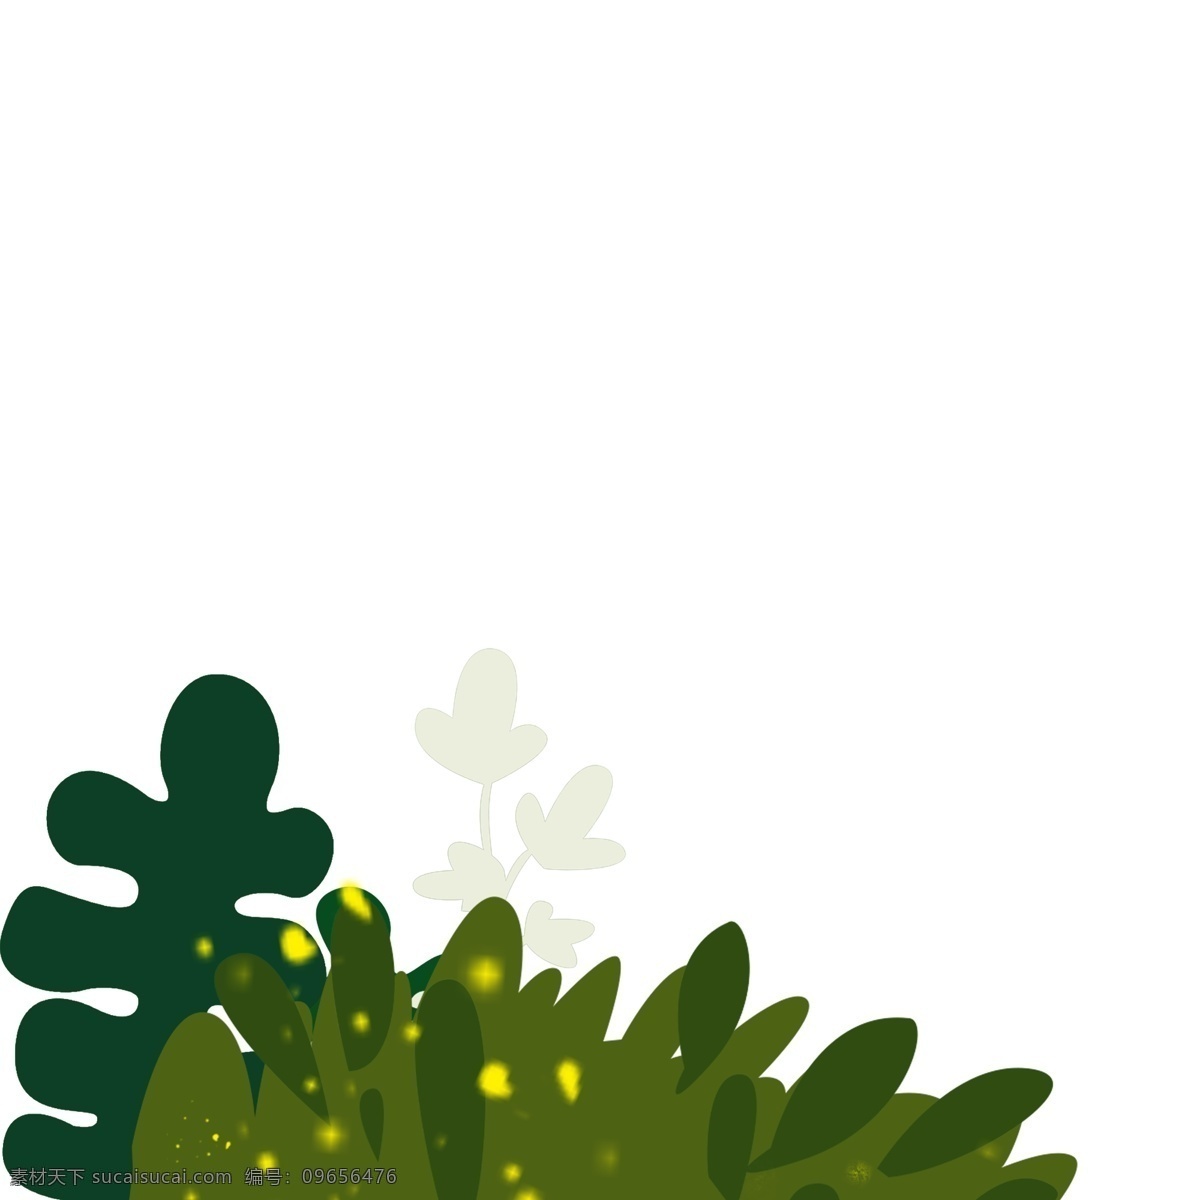 卡通 绿色 叶子 花朵 免 扣 图 绿色叶子 白色花朵 卡通植物 免扣图 卡通绿色 植物 叶子花朵